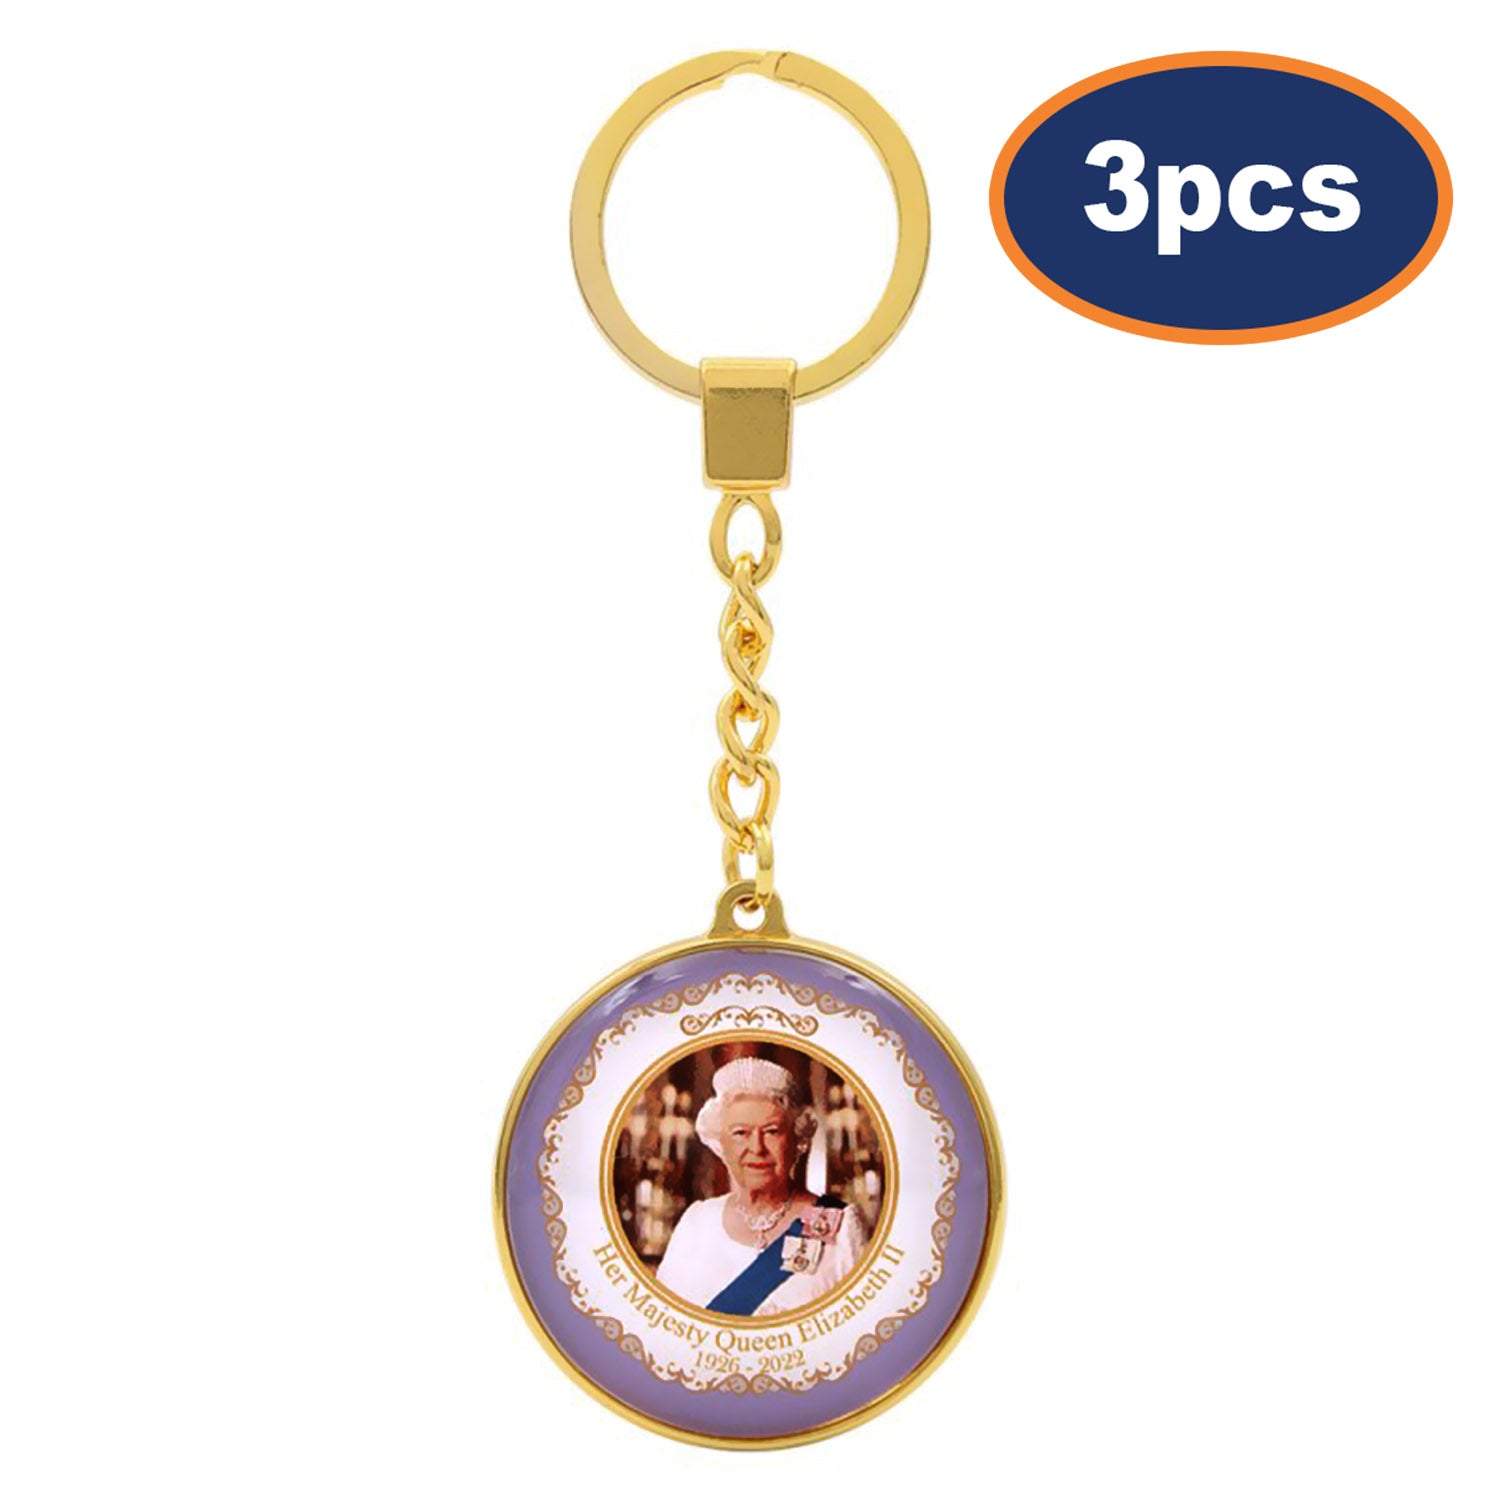 3pcs Queen Elizabeth II Gold Keyring